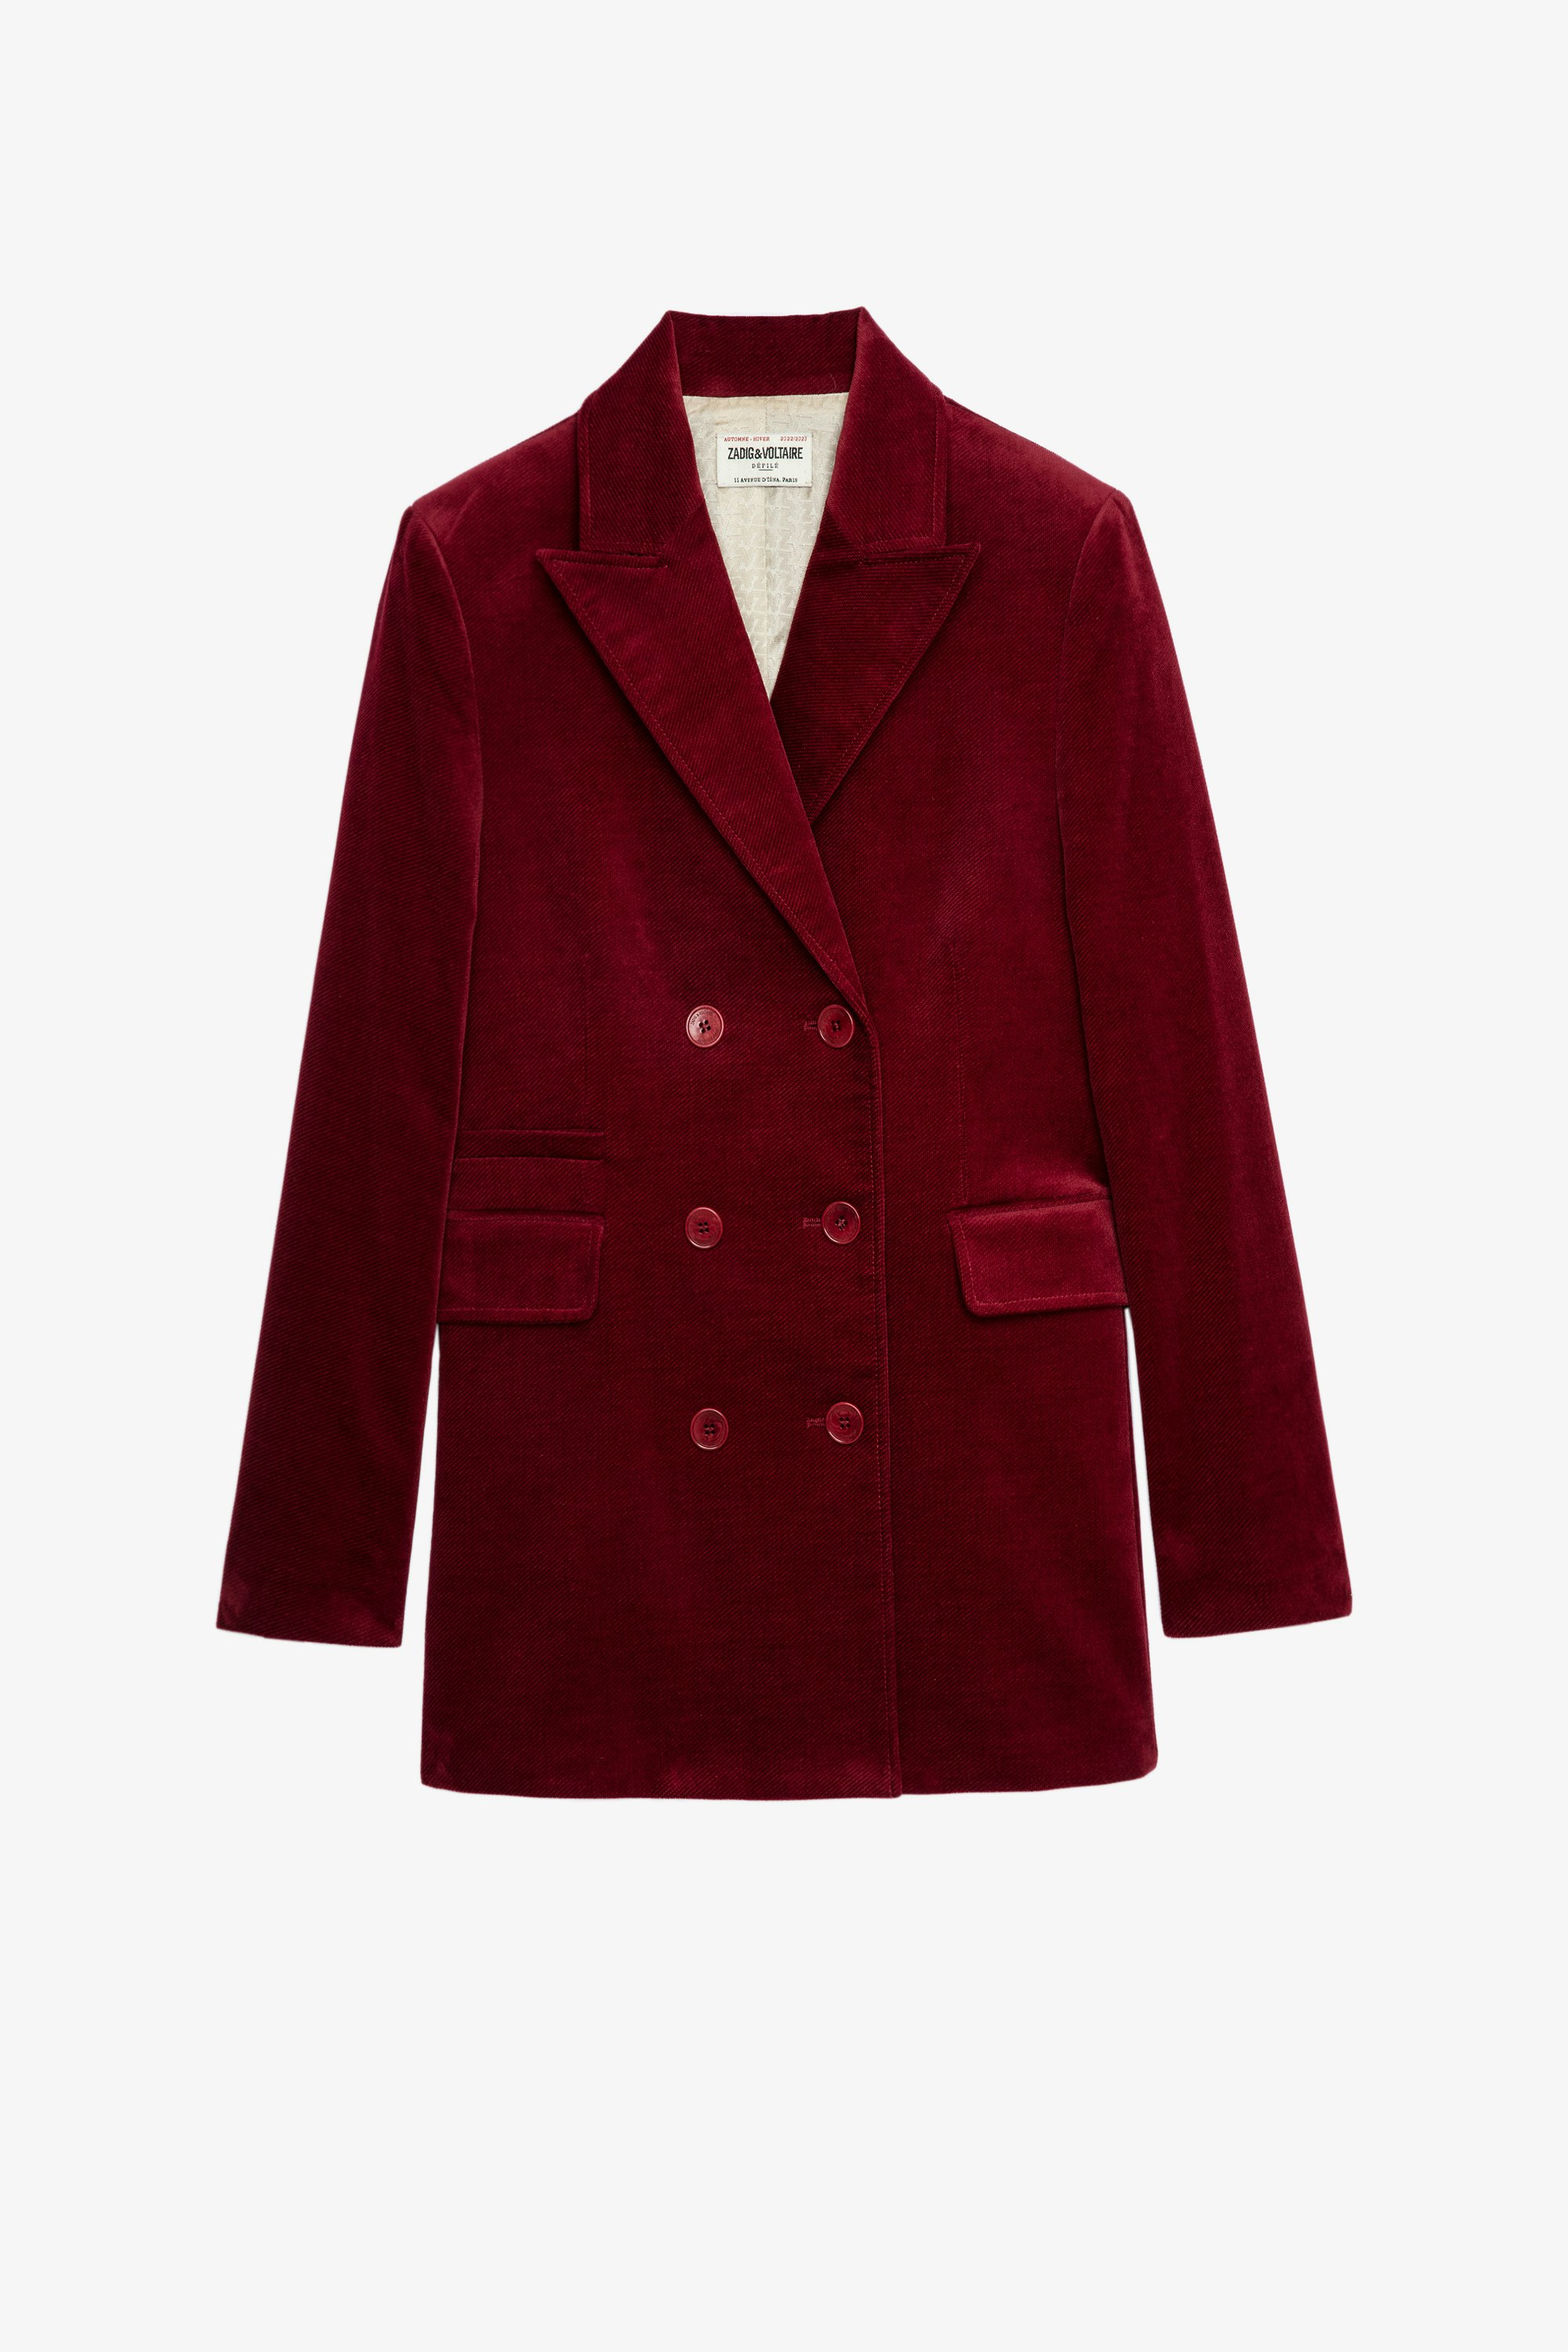 Voici Velvet ジャケット Women’s structured buttoned jacket in red velvet